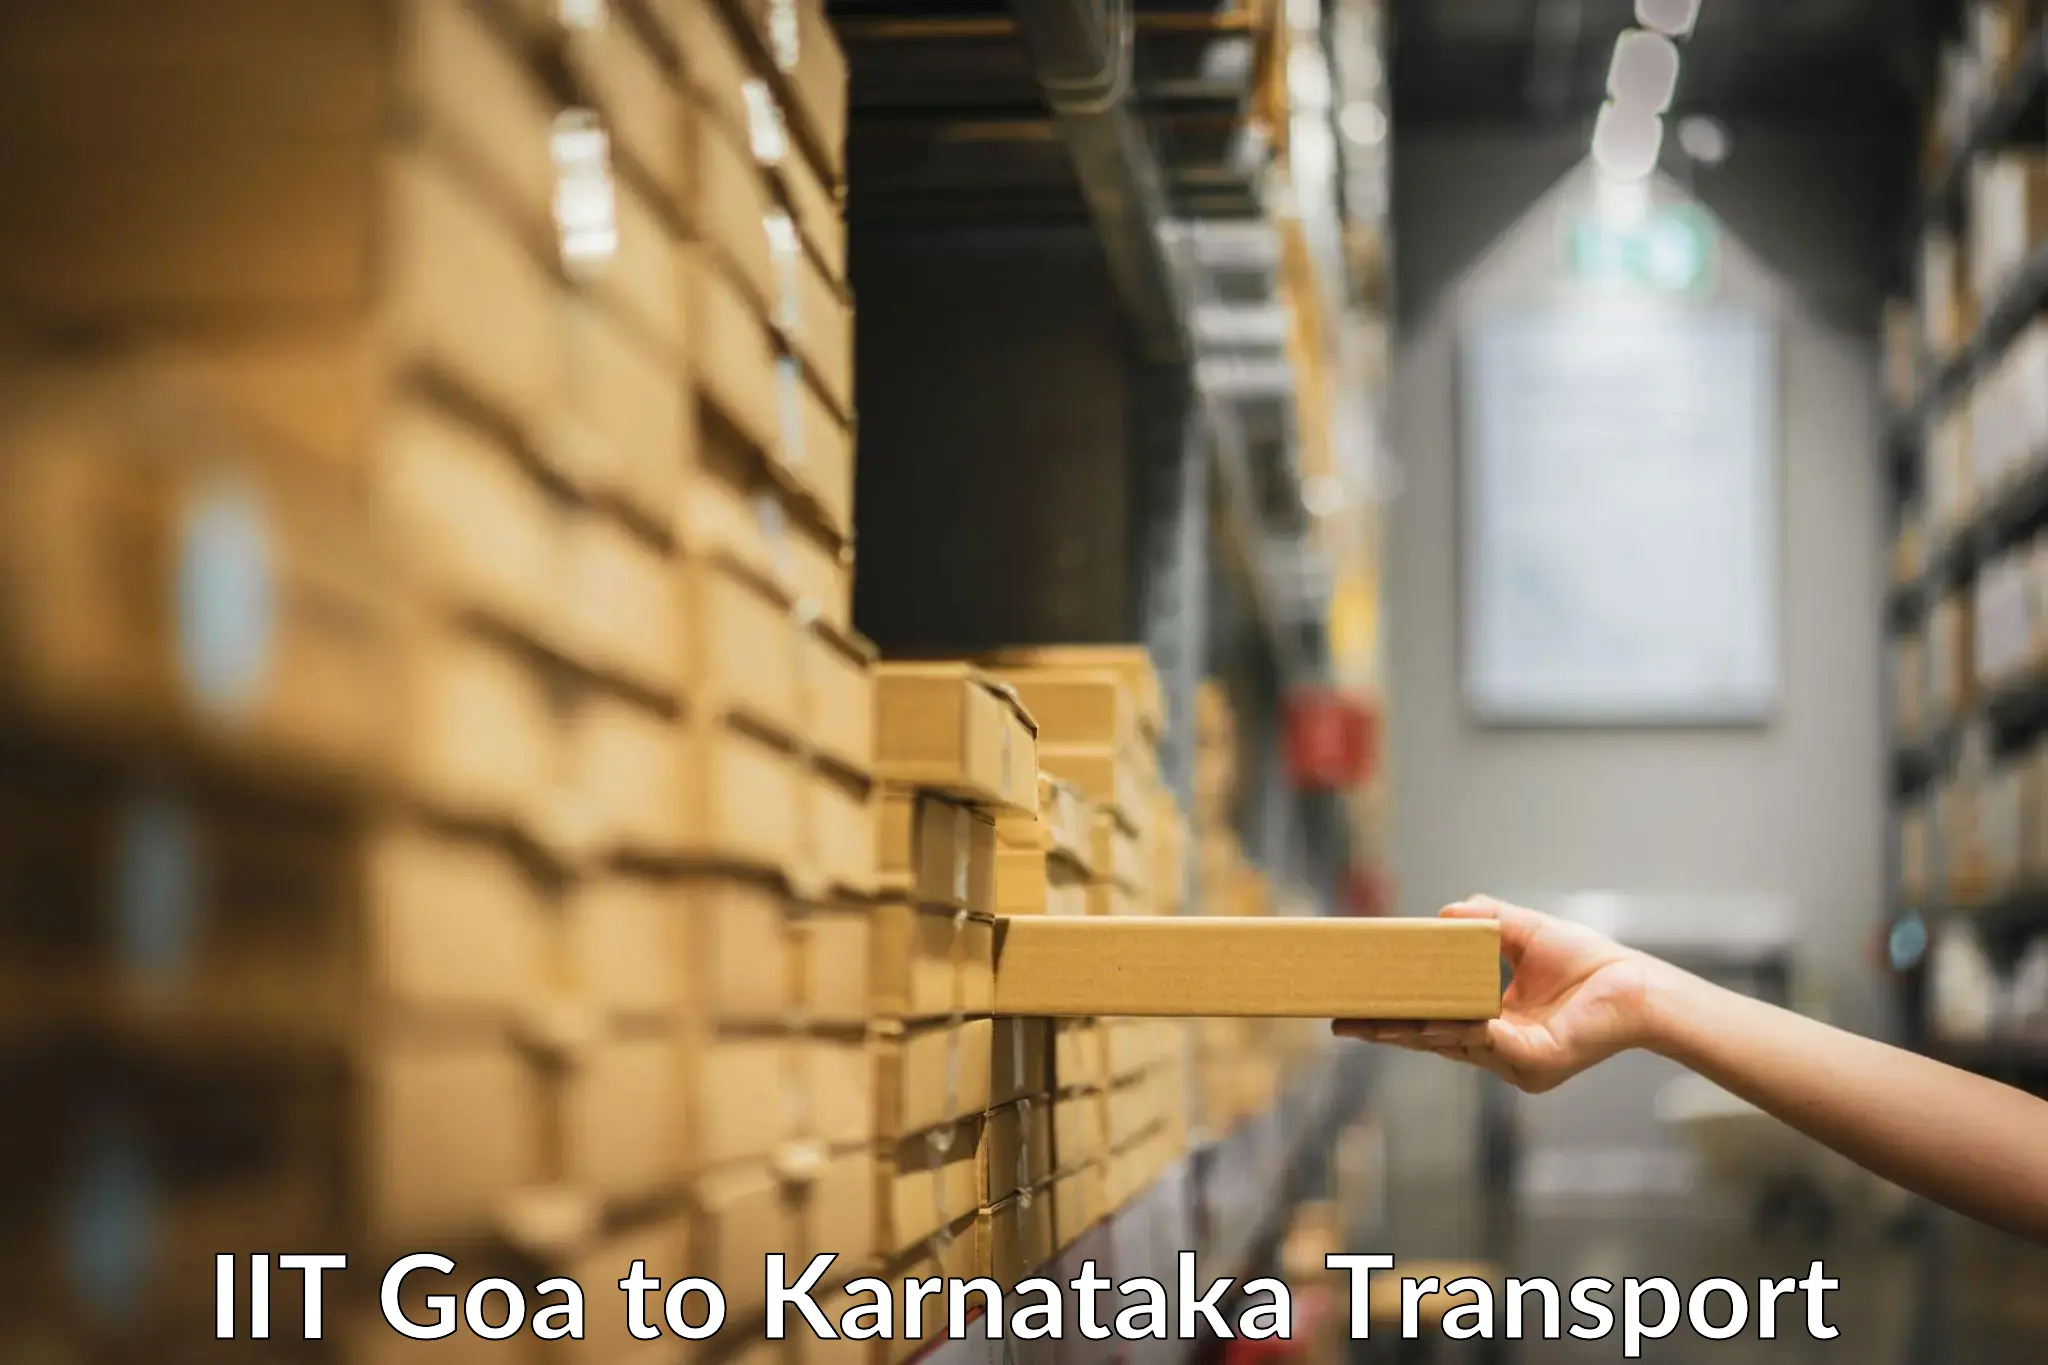 Vehicle parcel service IIT Goa to Kanakapura